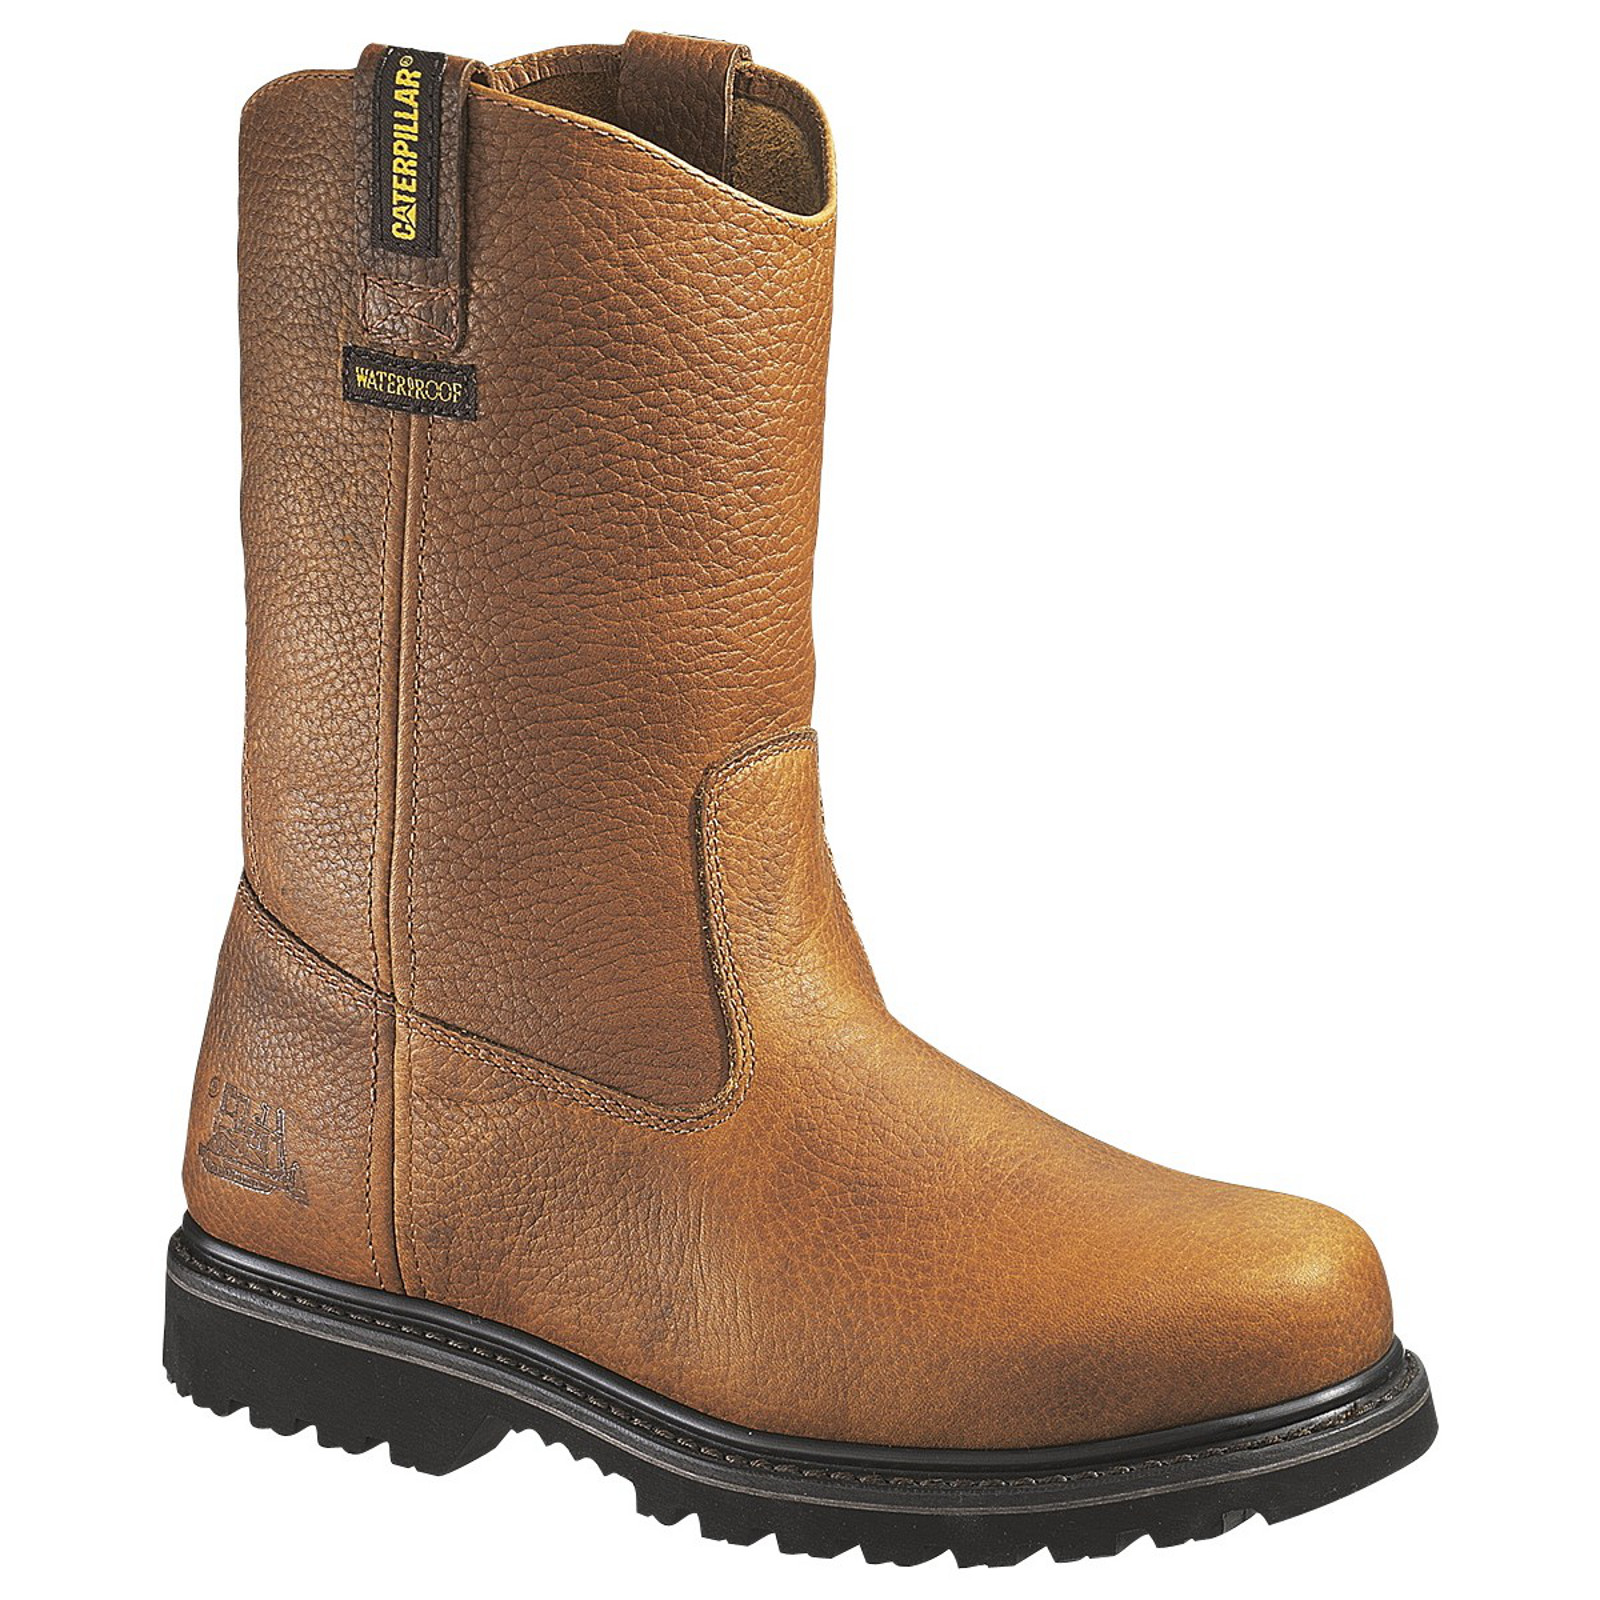 Cat Footwear Men's 10" Edgework Waterproof Wellington Steel Toe EH Work Boot P89882 Wide Width Available - Brown